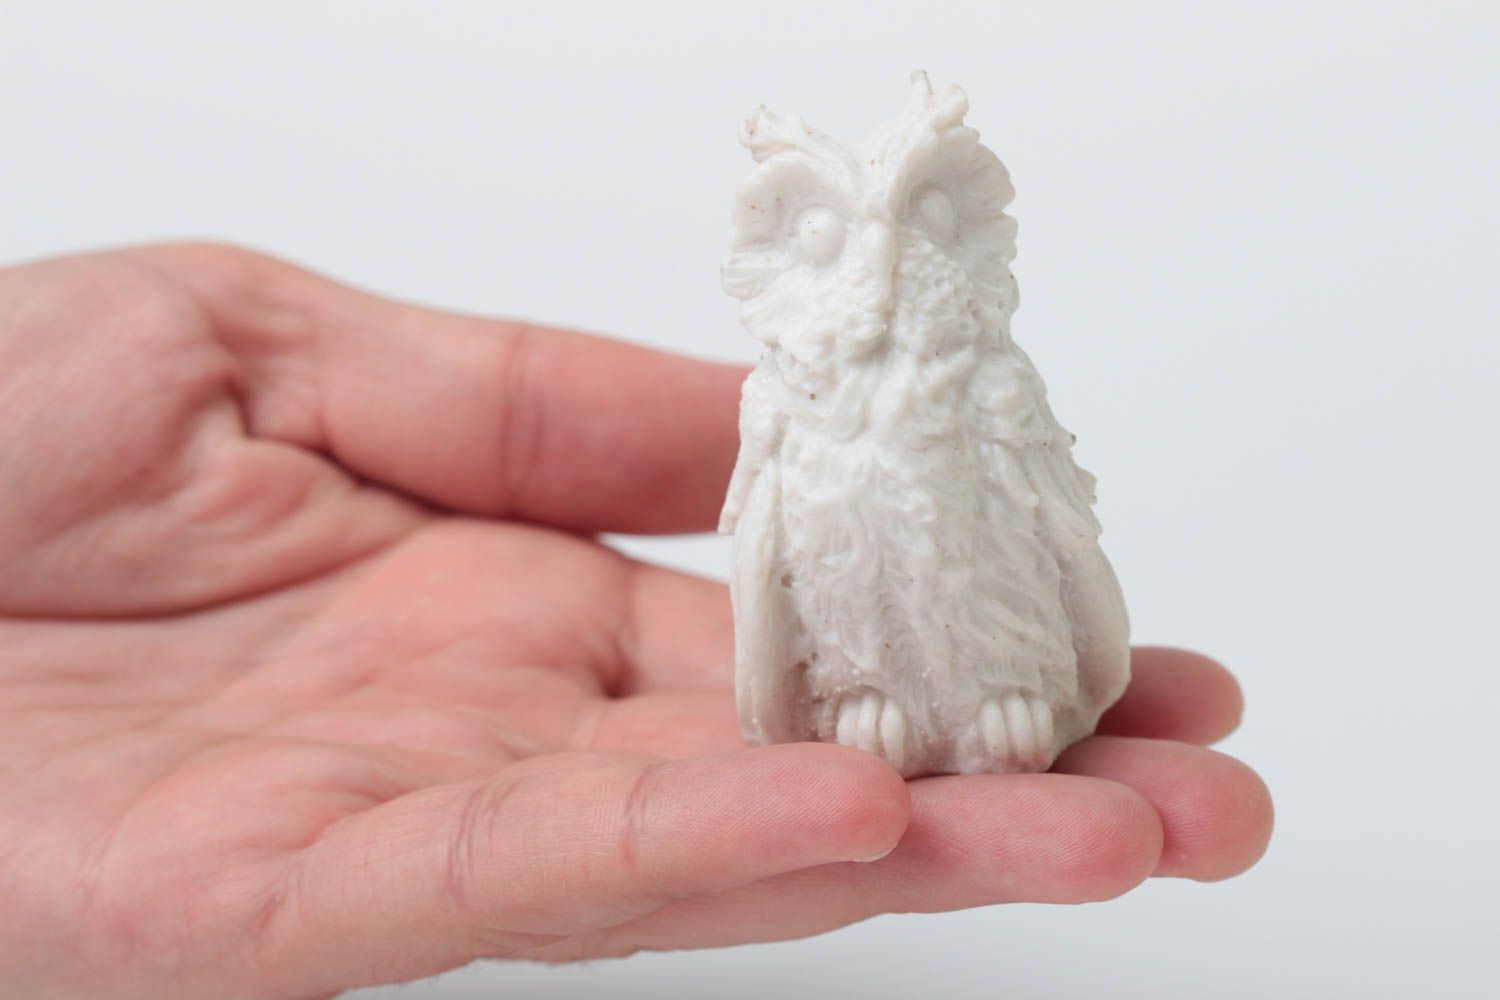 Handmade statuette designer statuette home decor unusual gift owl figurine photo 5